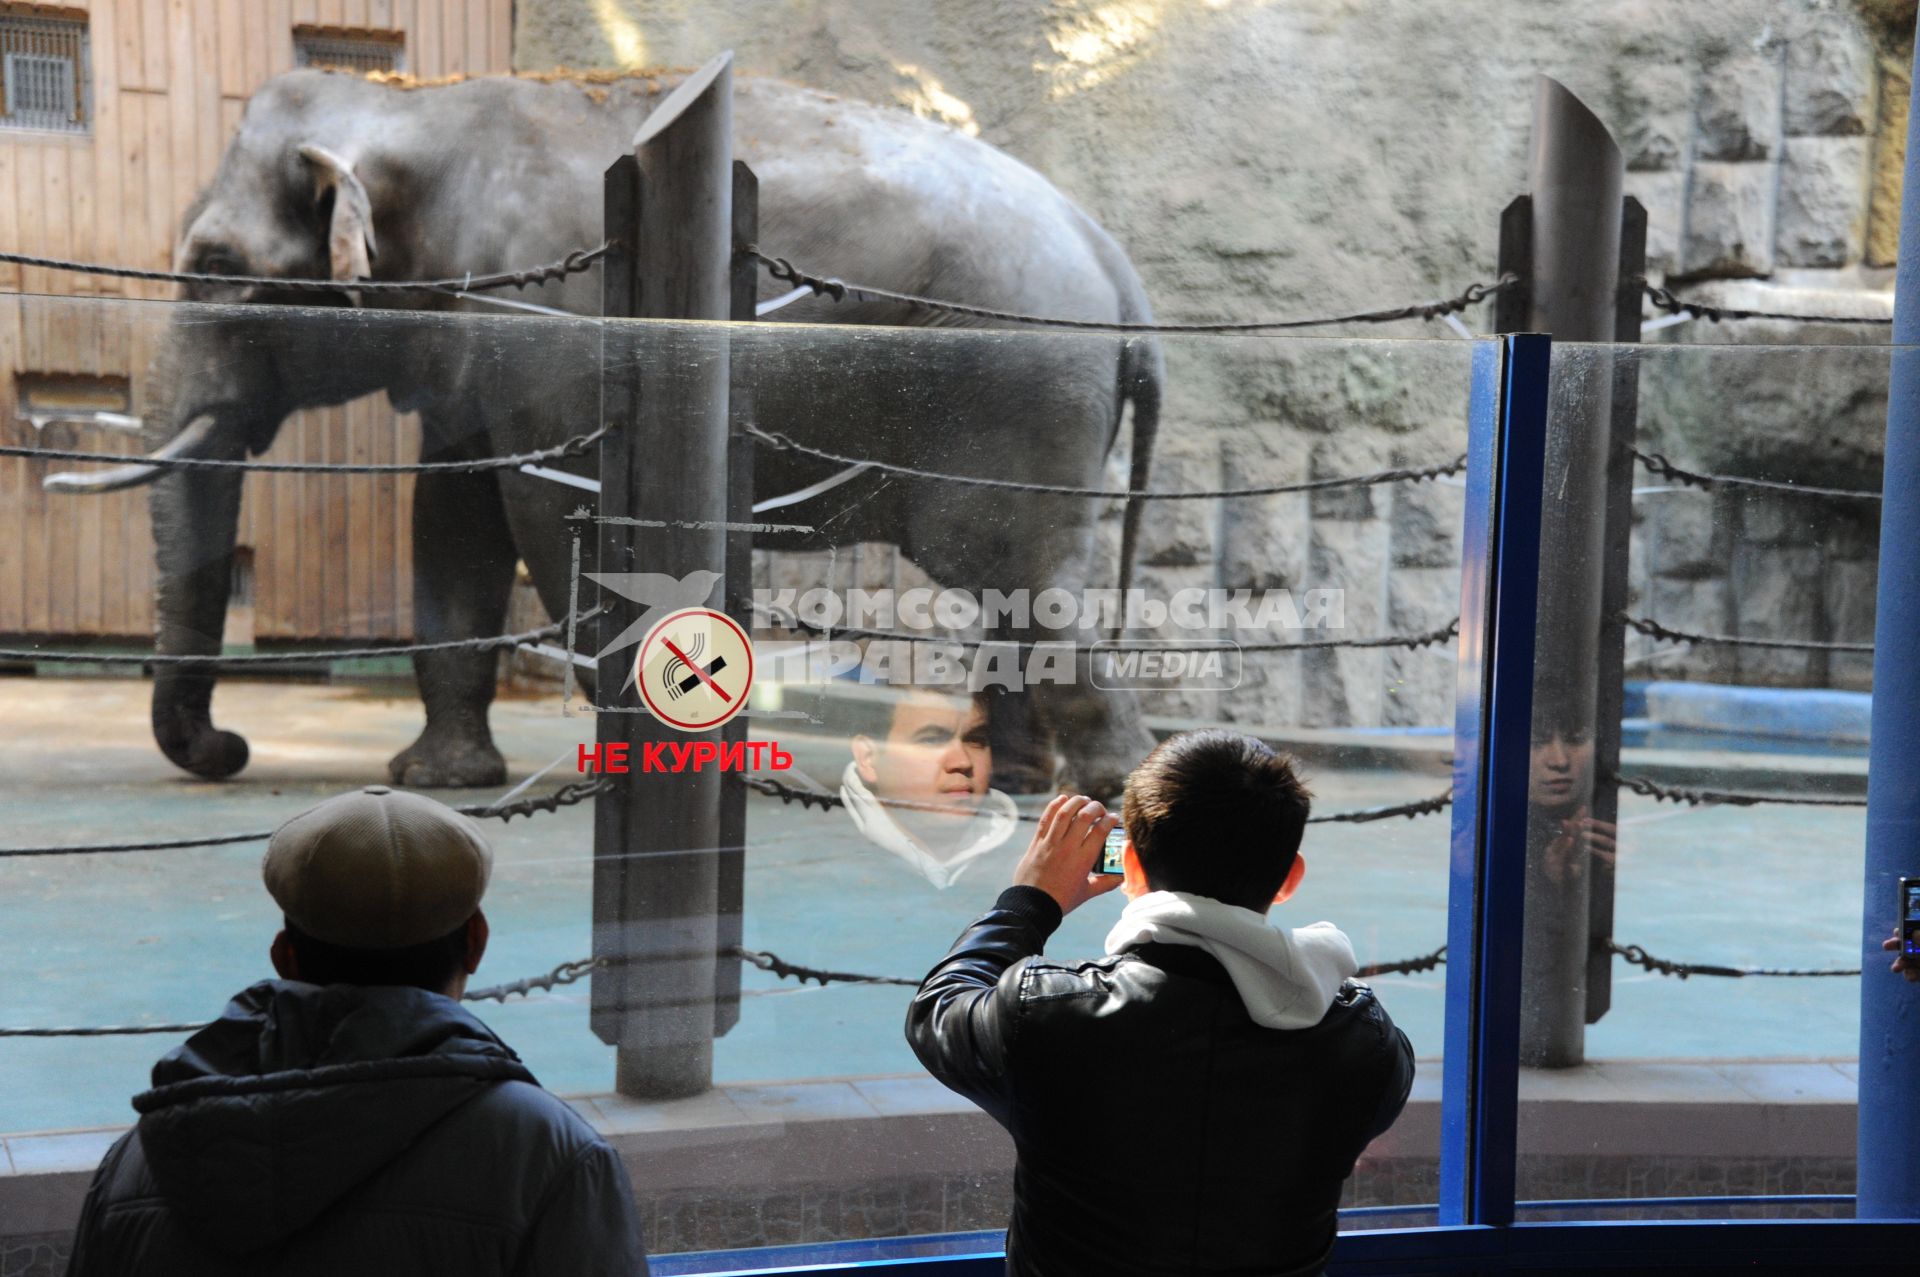 Московский зоопарк. На снимке: мужчина фотографирует слона через стекло.